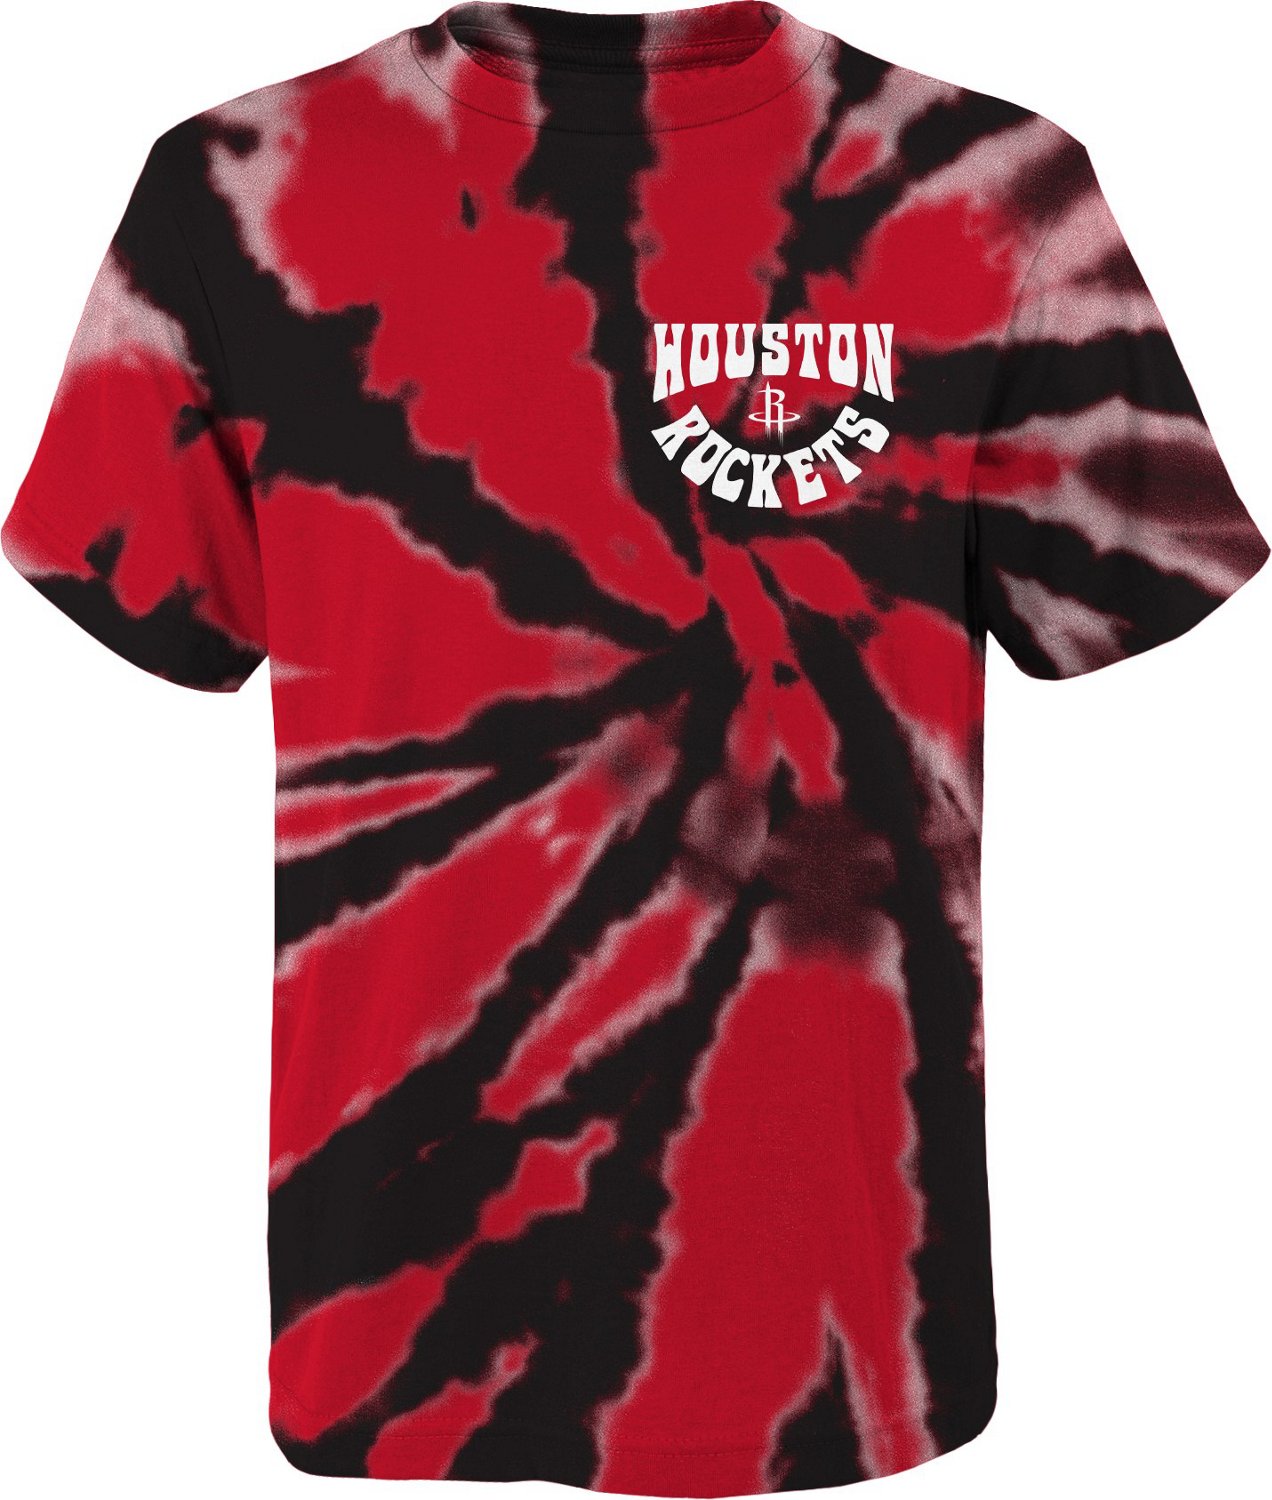 Outerstuff Kids' Houston Rockets Tie-Dye Pennant T-shirt